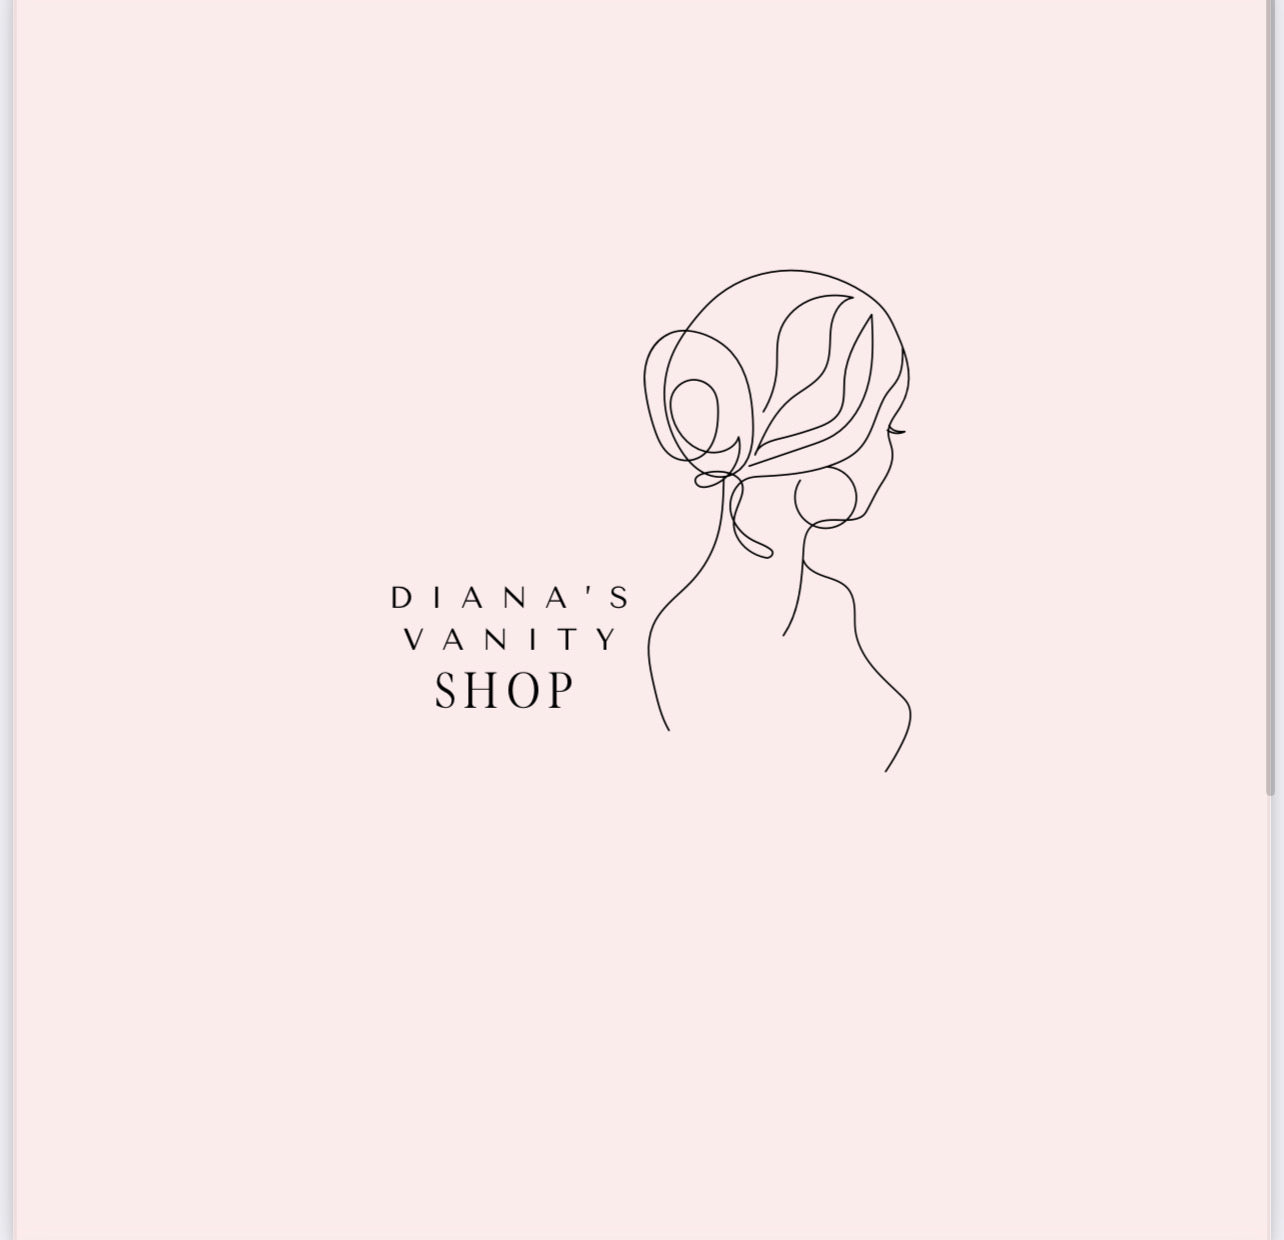 Dianas Vanity Shop